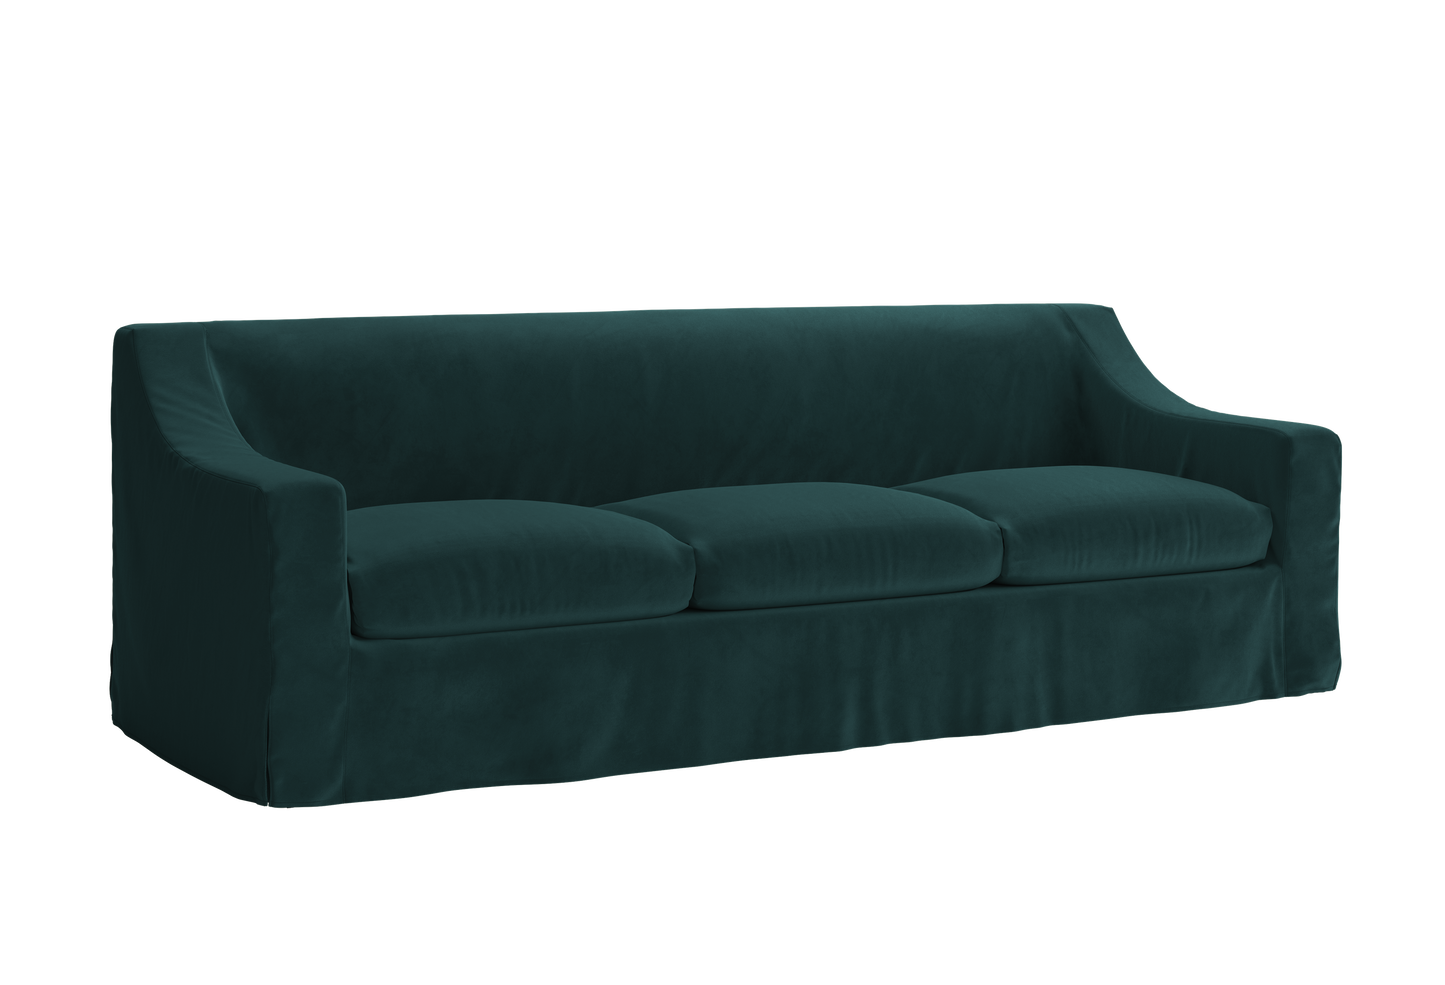 The Evergreen Sofa Sofa